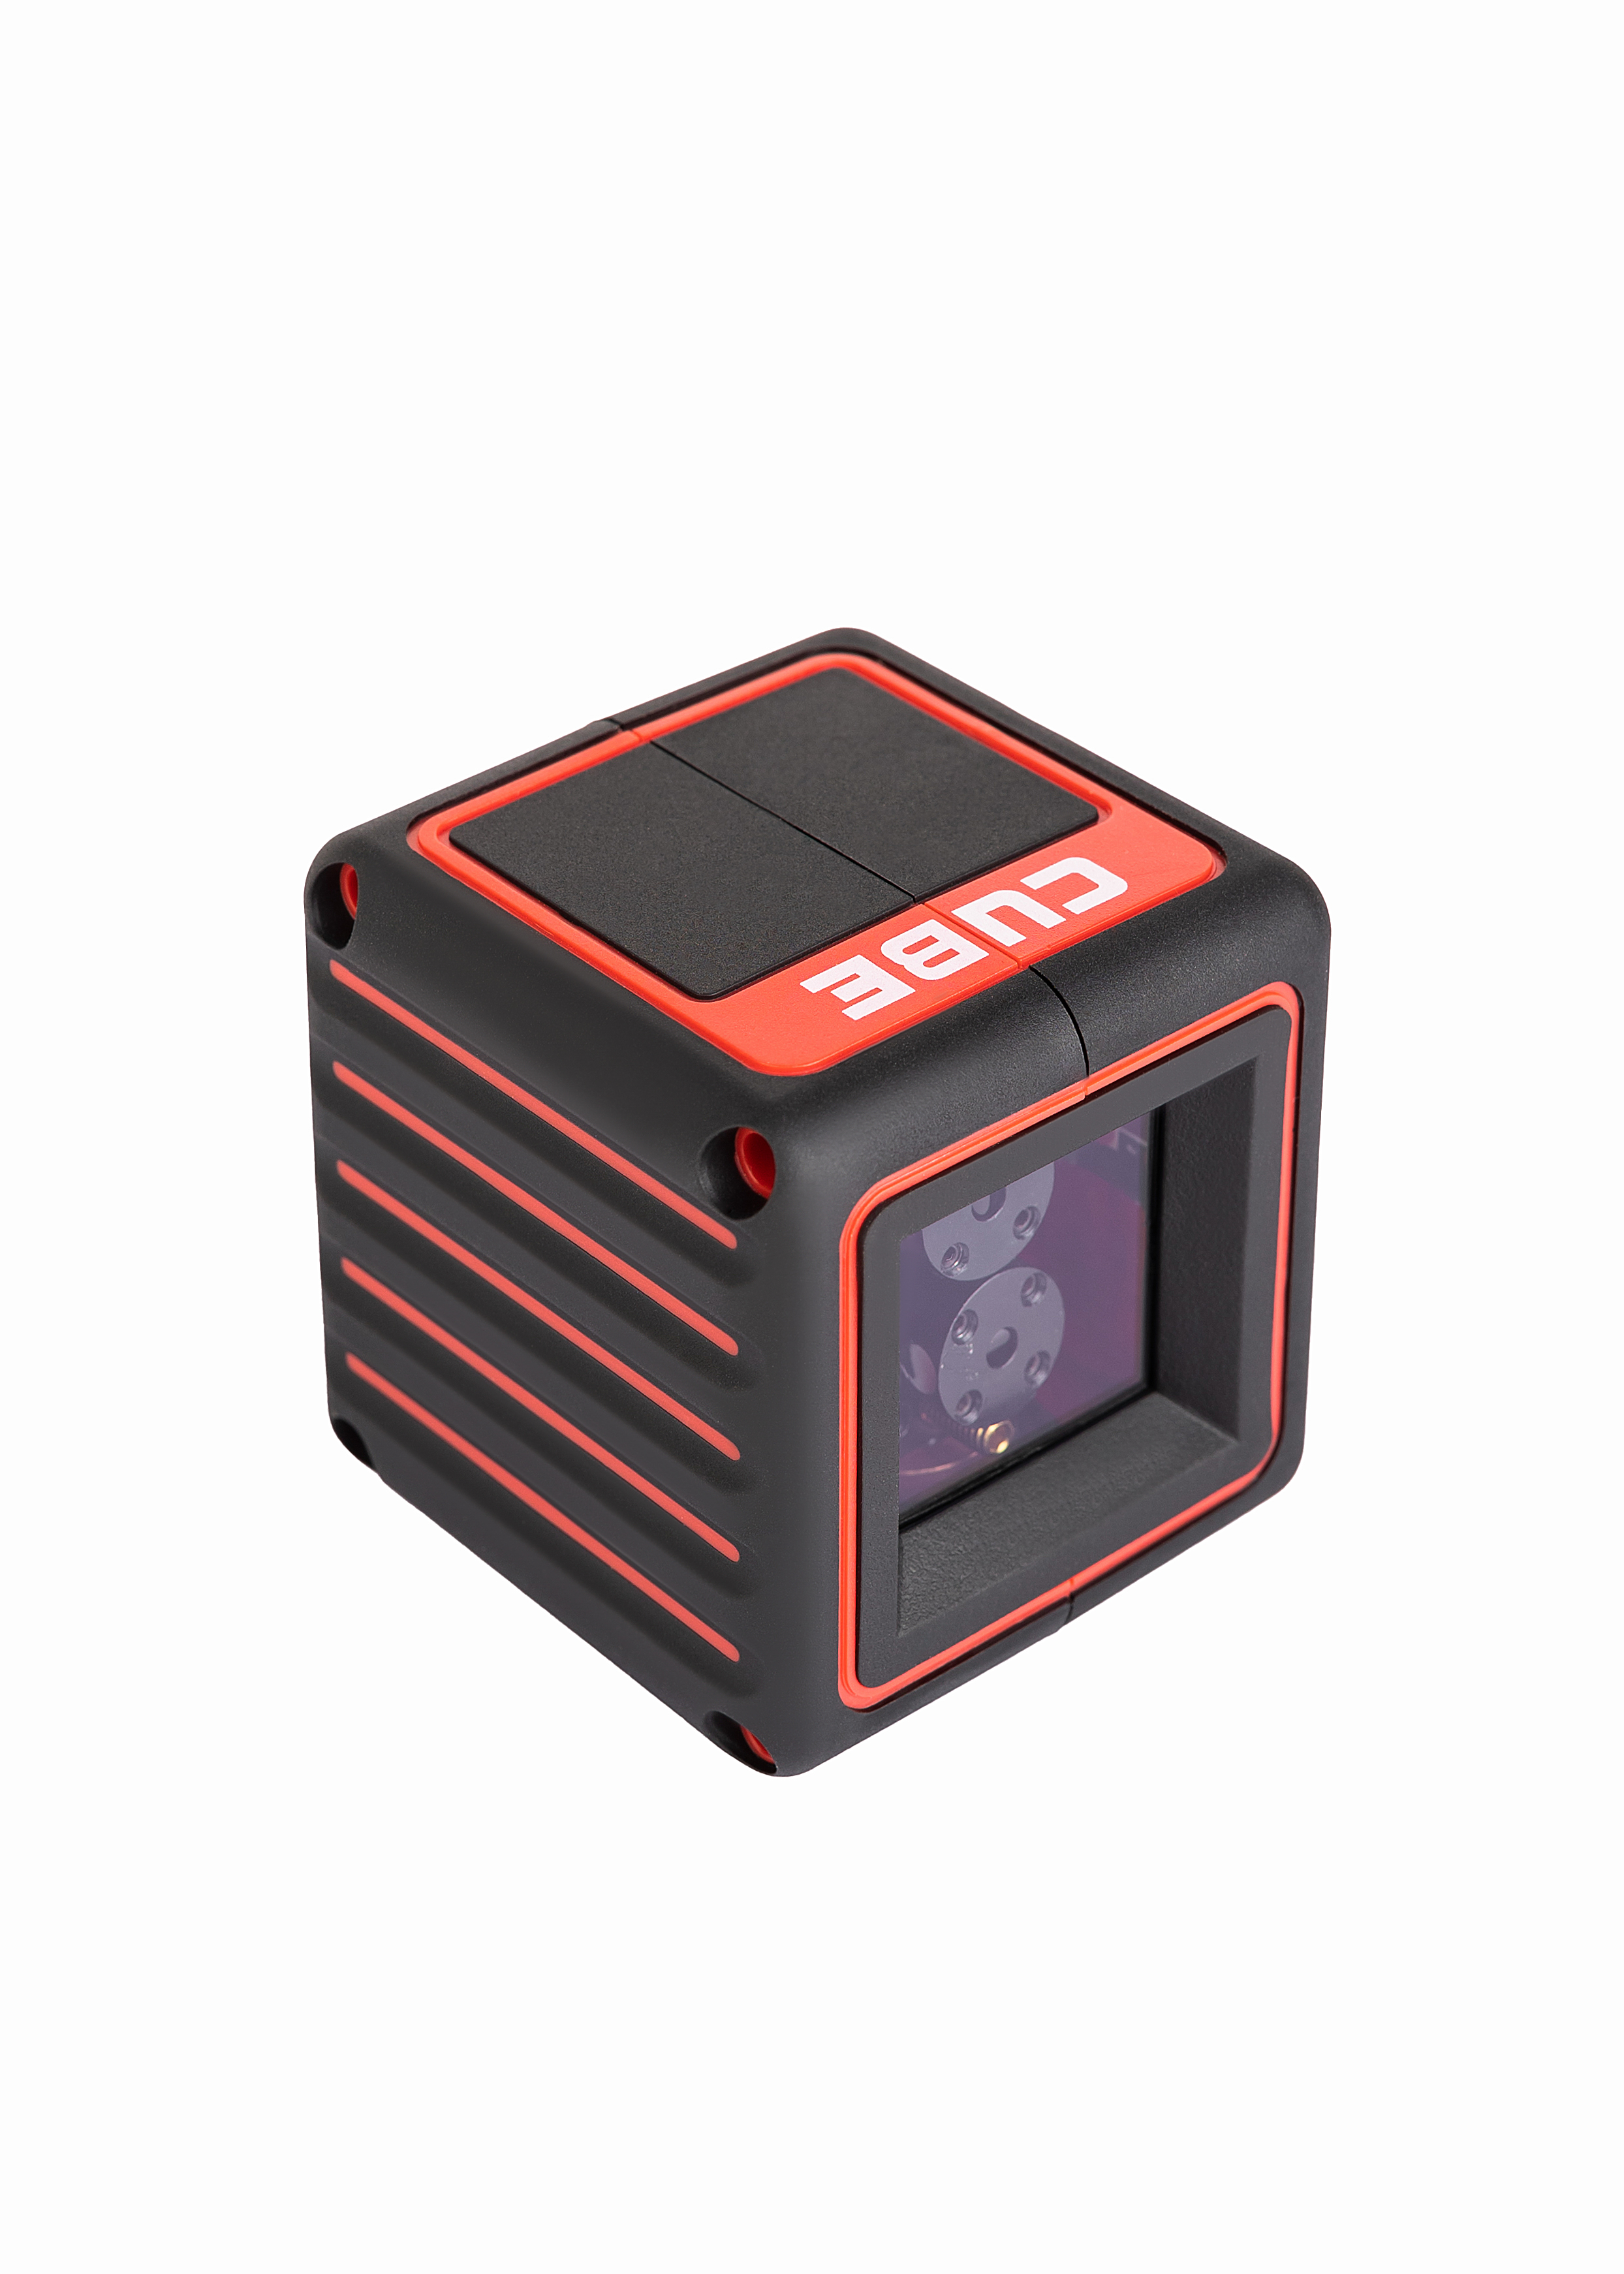 Лазерный уровень cube mini. Лазерный уровень ada Cube Basic Edition а00341. Cube 3d лазерный уровень. Ada Cube 3d professional Edition лазерный уровень. Ada Cube Home Edition.